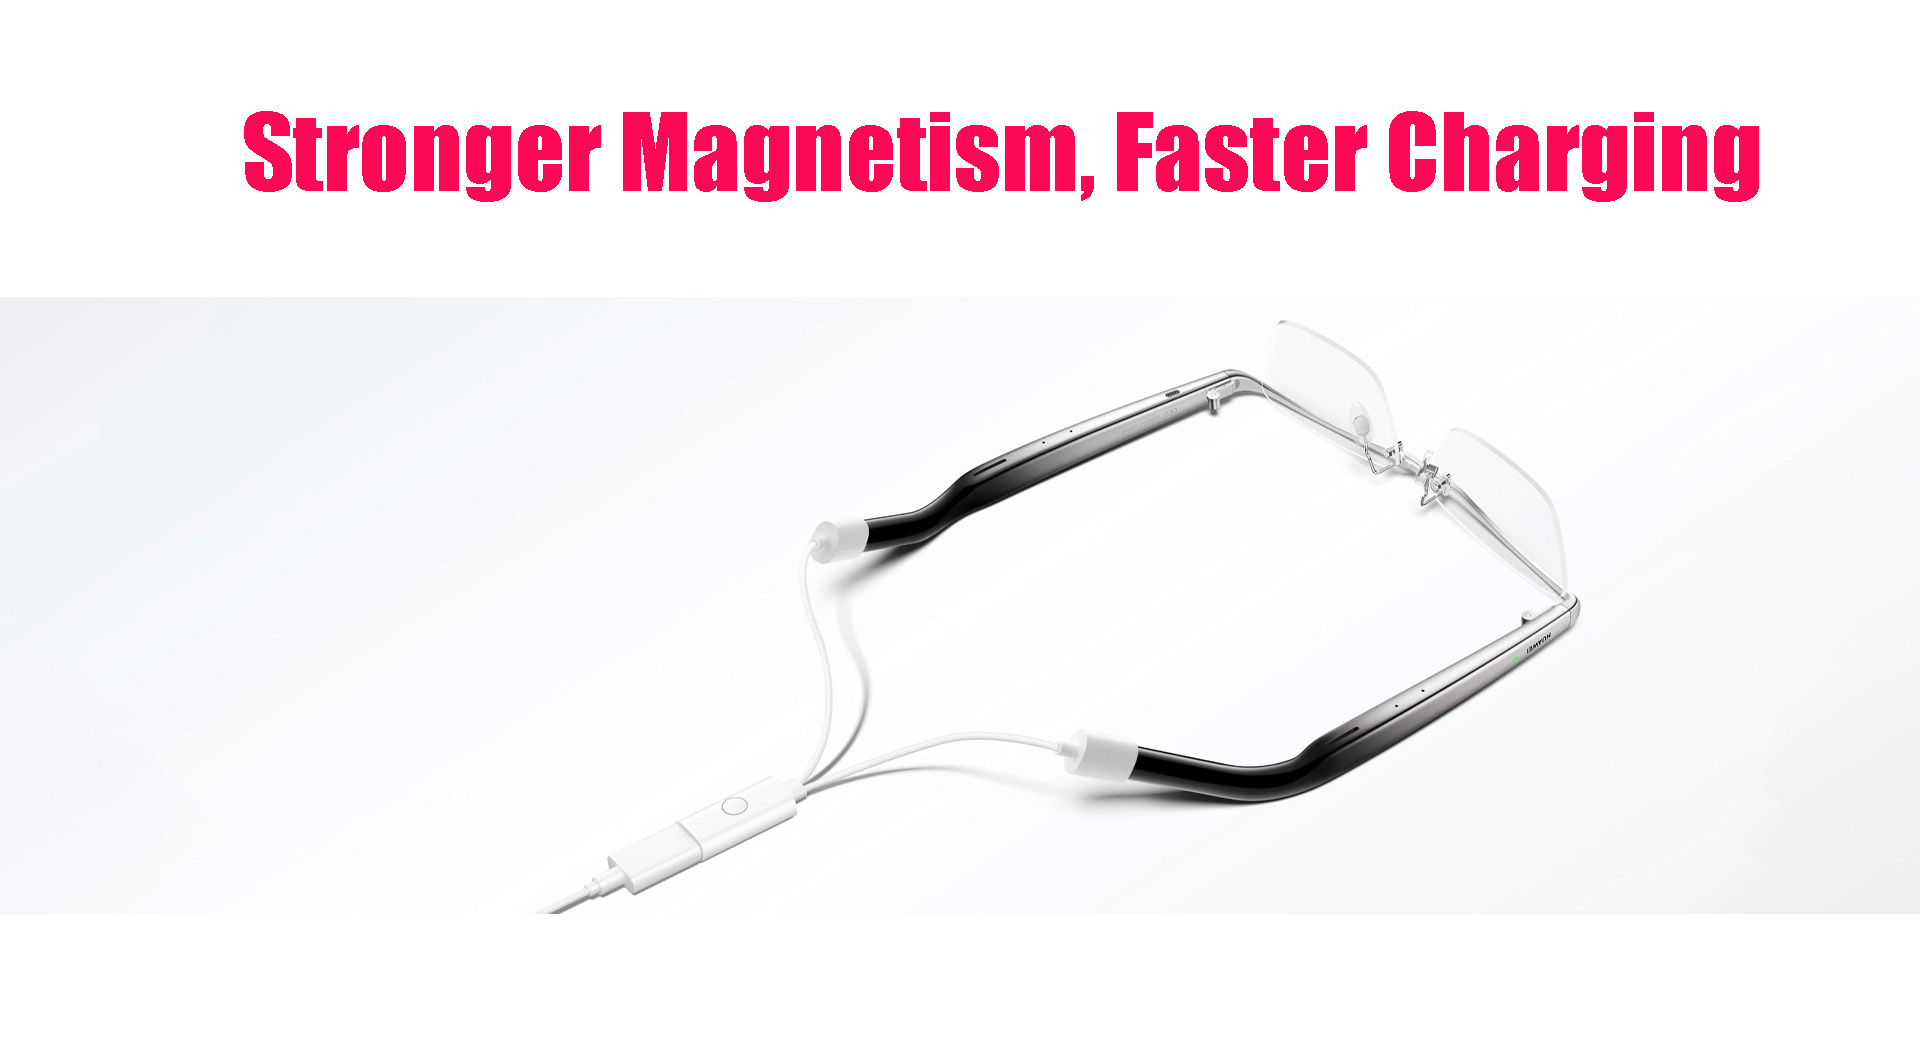 Huawei Eyewear 2 Magnetic Charging Converter